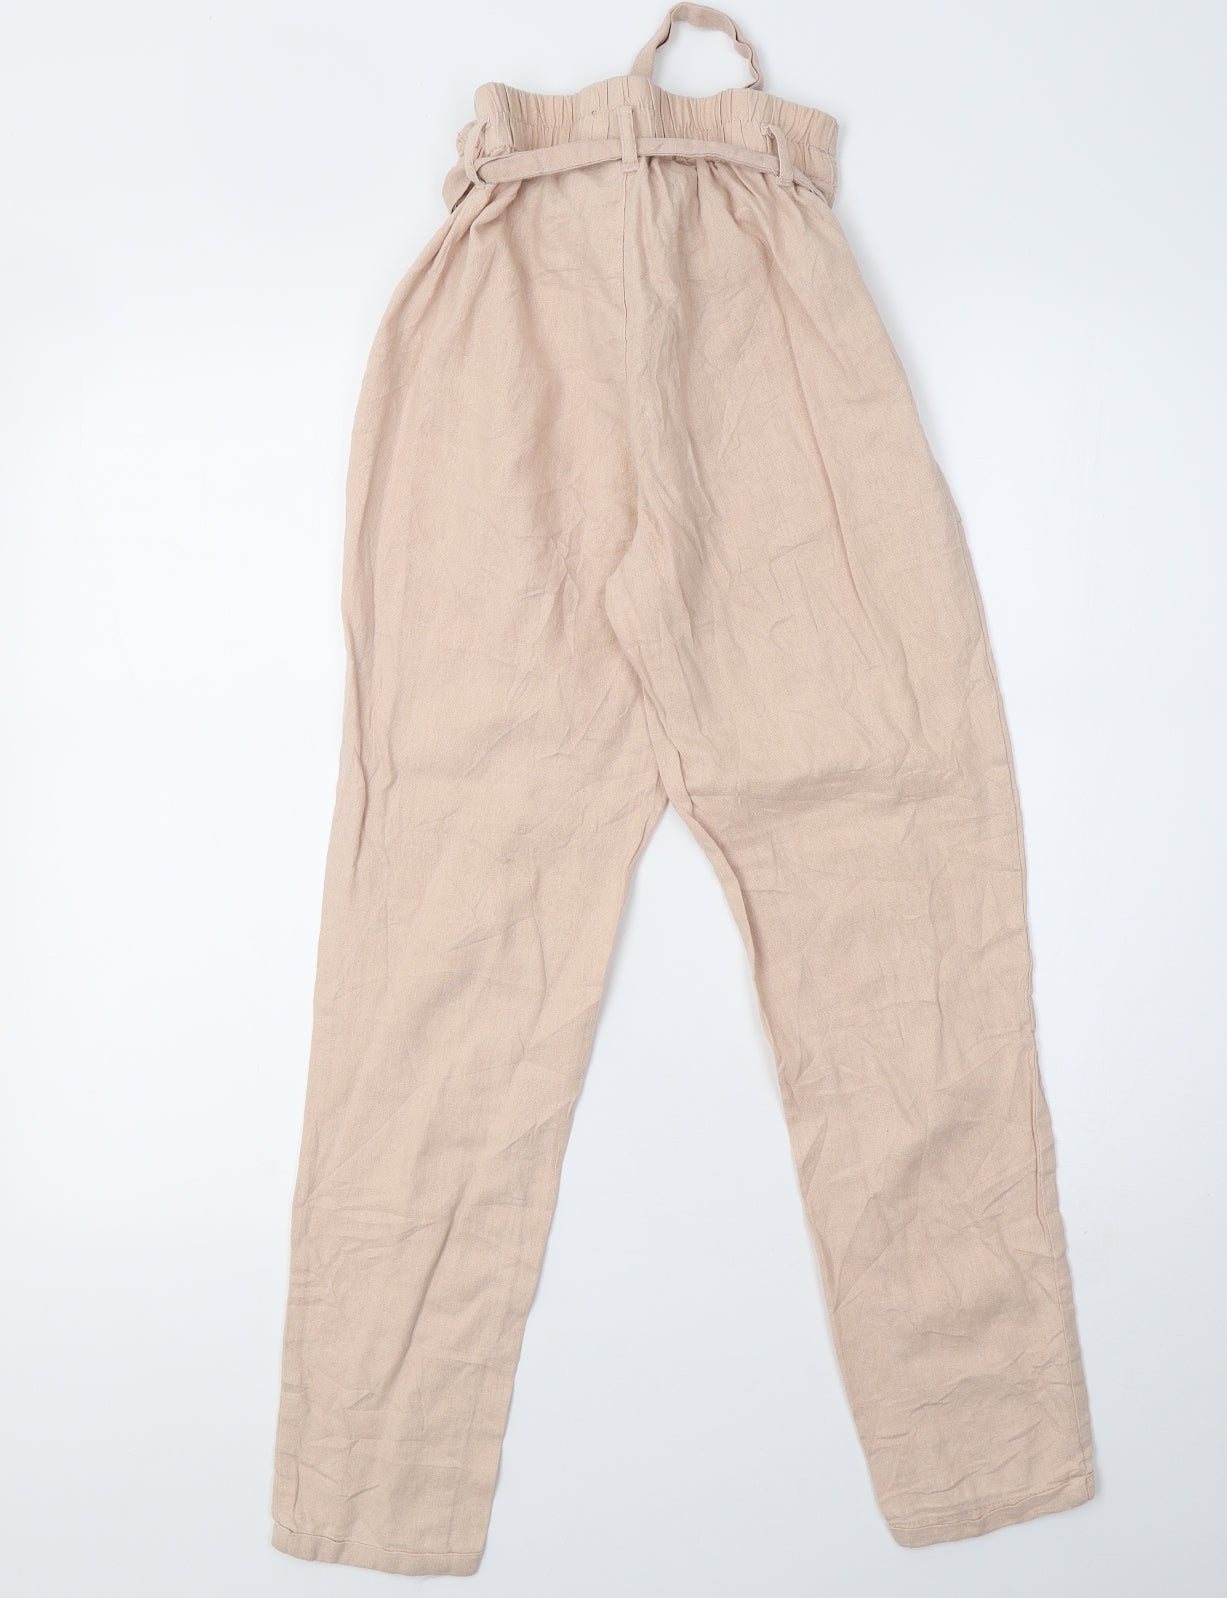 Primark White Capri Trousers Size 20 – beagle boutique